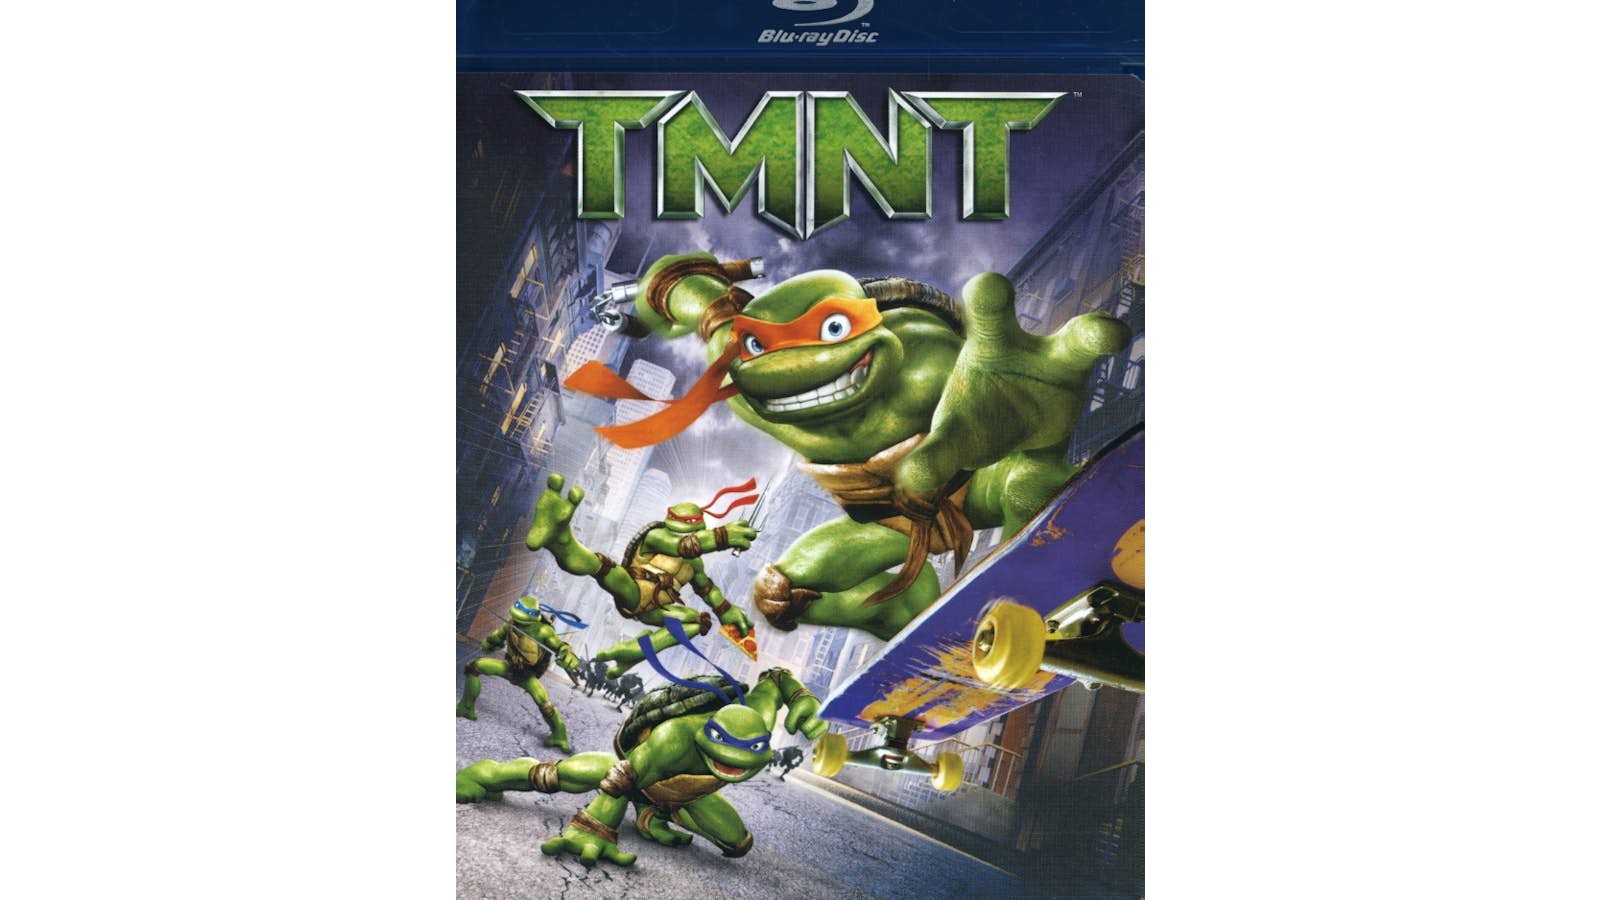 Teenage Mutant Ninja Turtles (2007) DVD